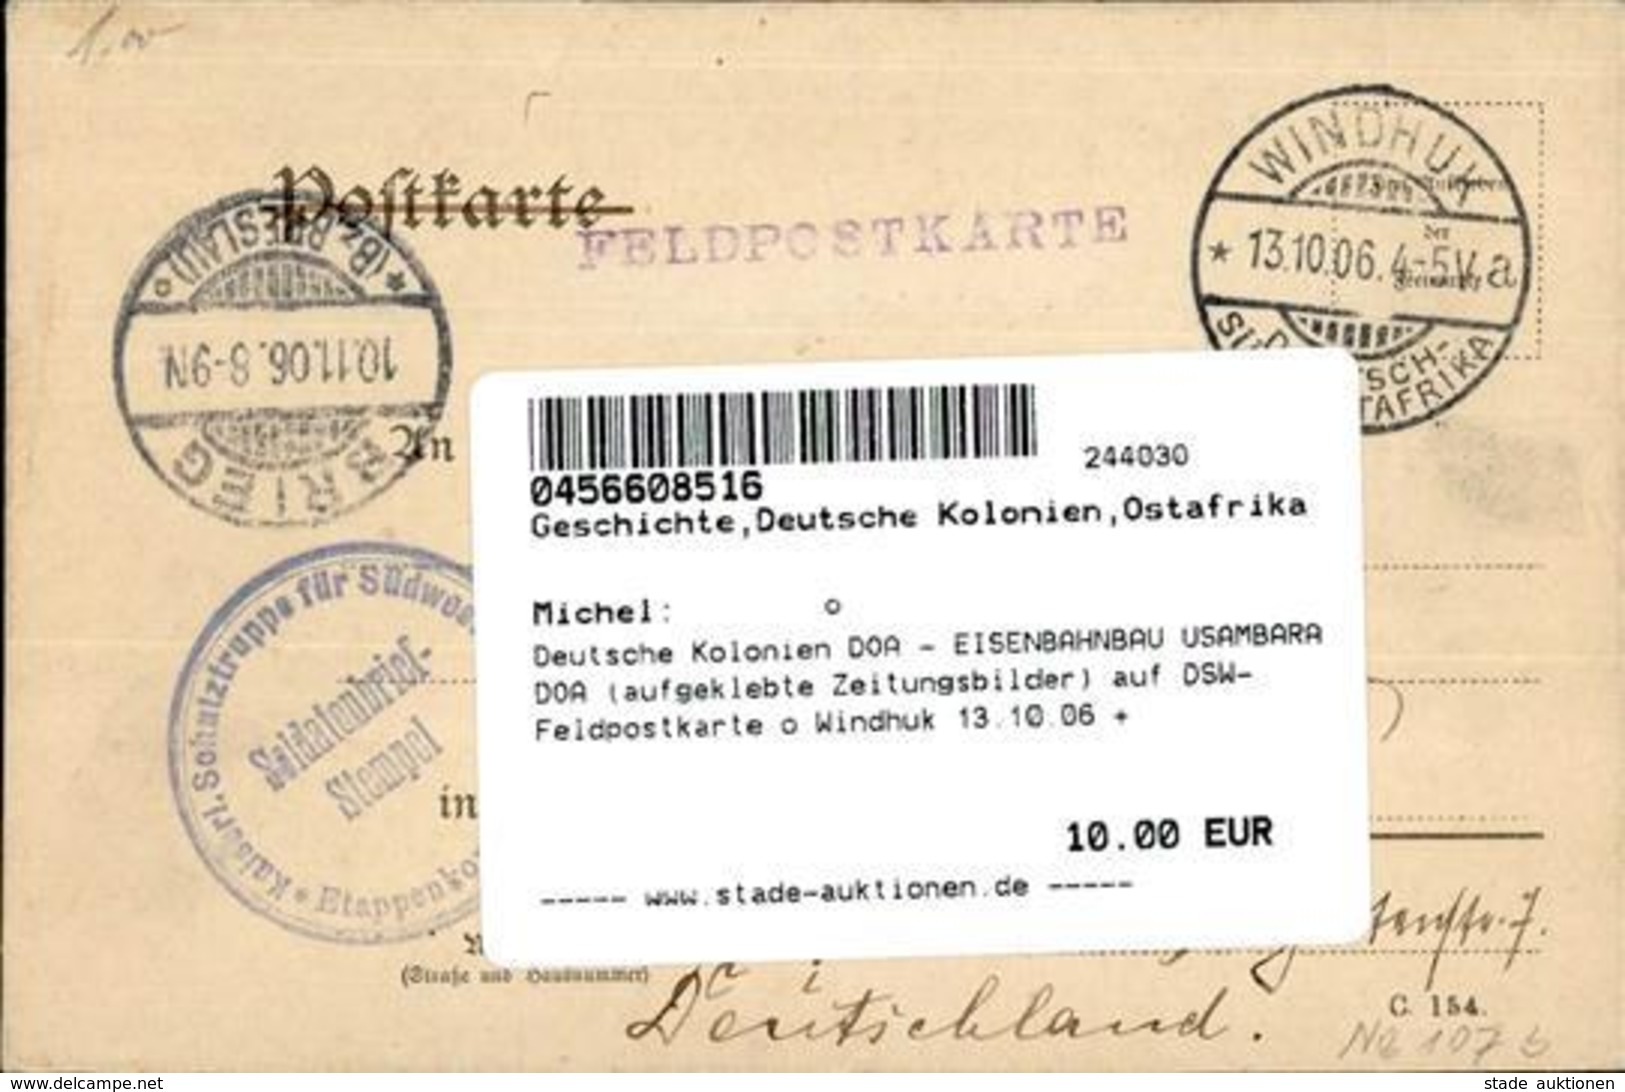 Deutsche Kolonien DOA - EISENBAHNBAU USAMBARA DOA (aufgeklebte Zeitungsbilder) Auf DSW-Feldpostkarte O Windhuk 13.10.06  - Non Classés